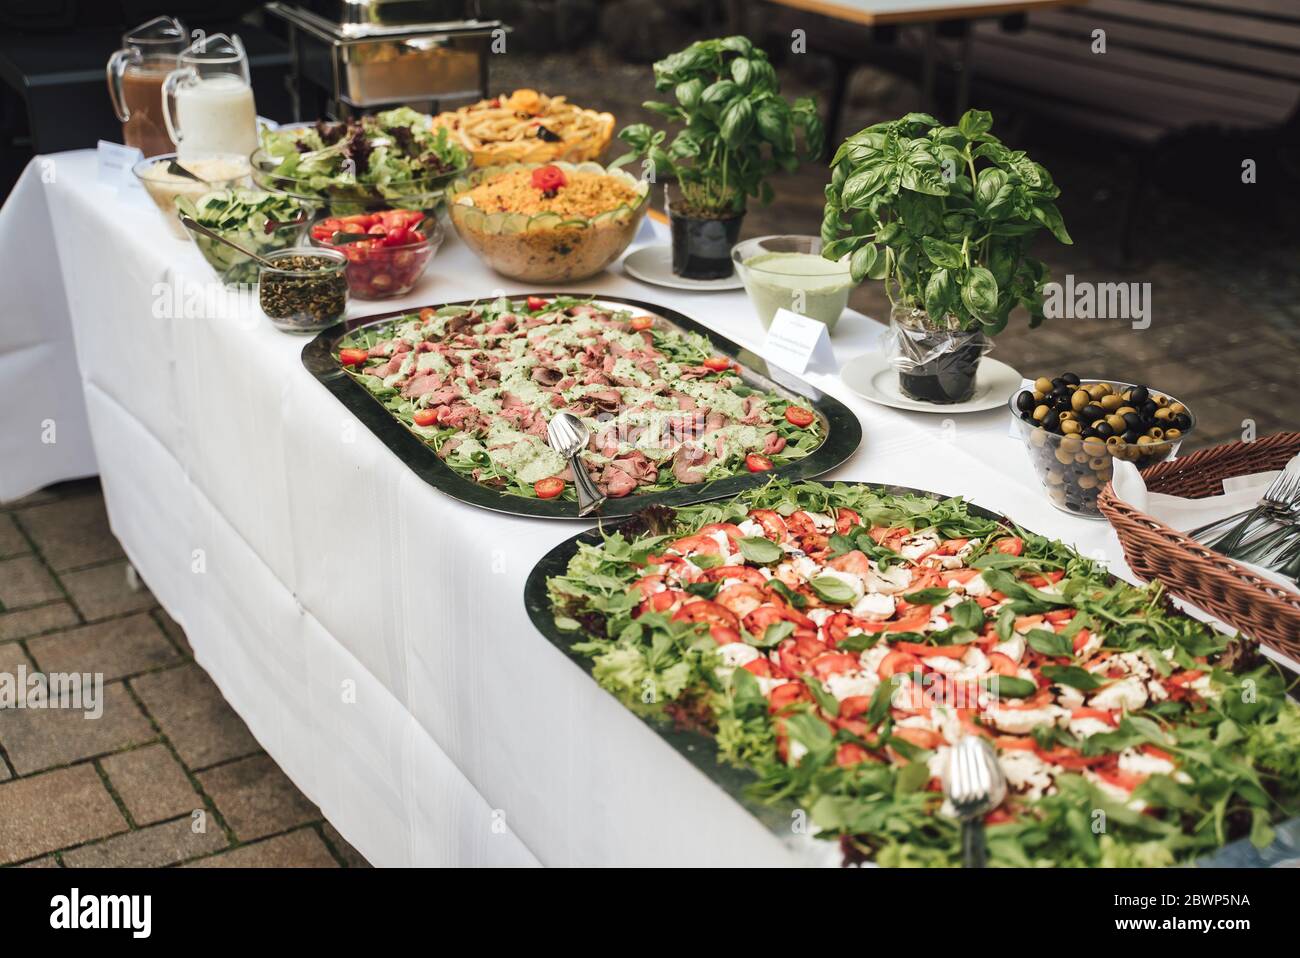 Table de buffet en libre-service avec divers en-cas de légumes et de viande. Concept de célébration, fête, anniversaire ou mariage. Banque D'Images